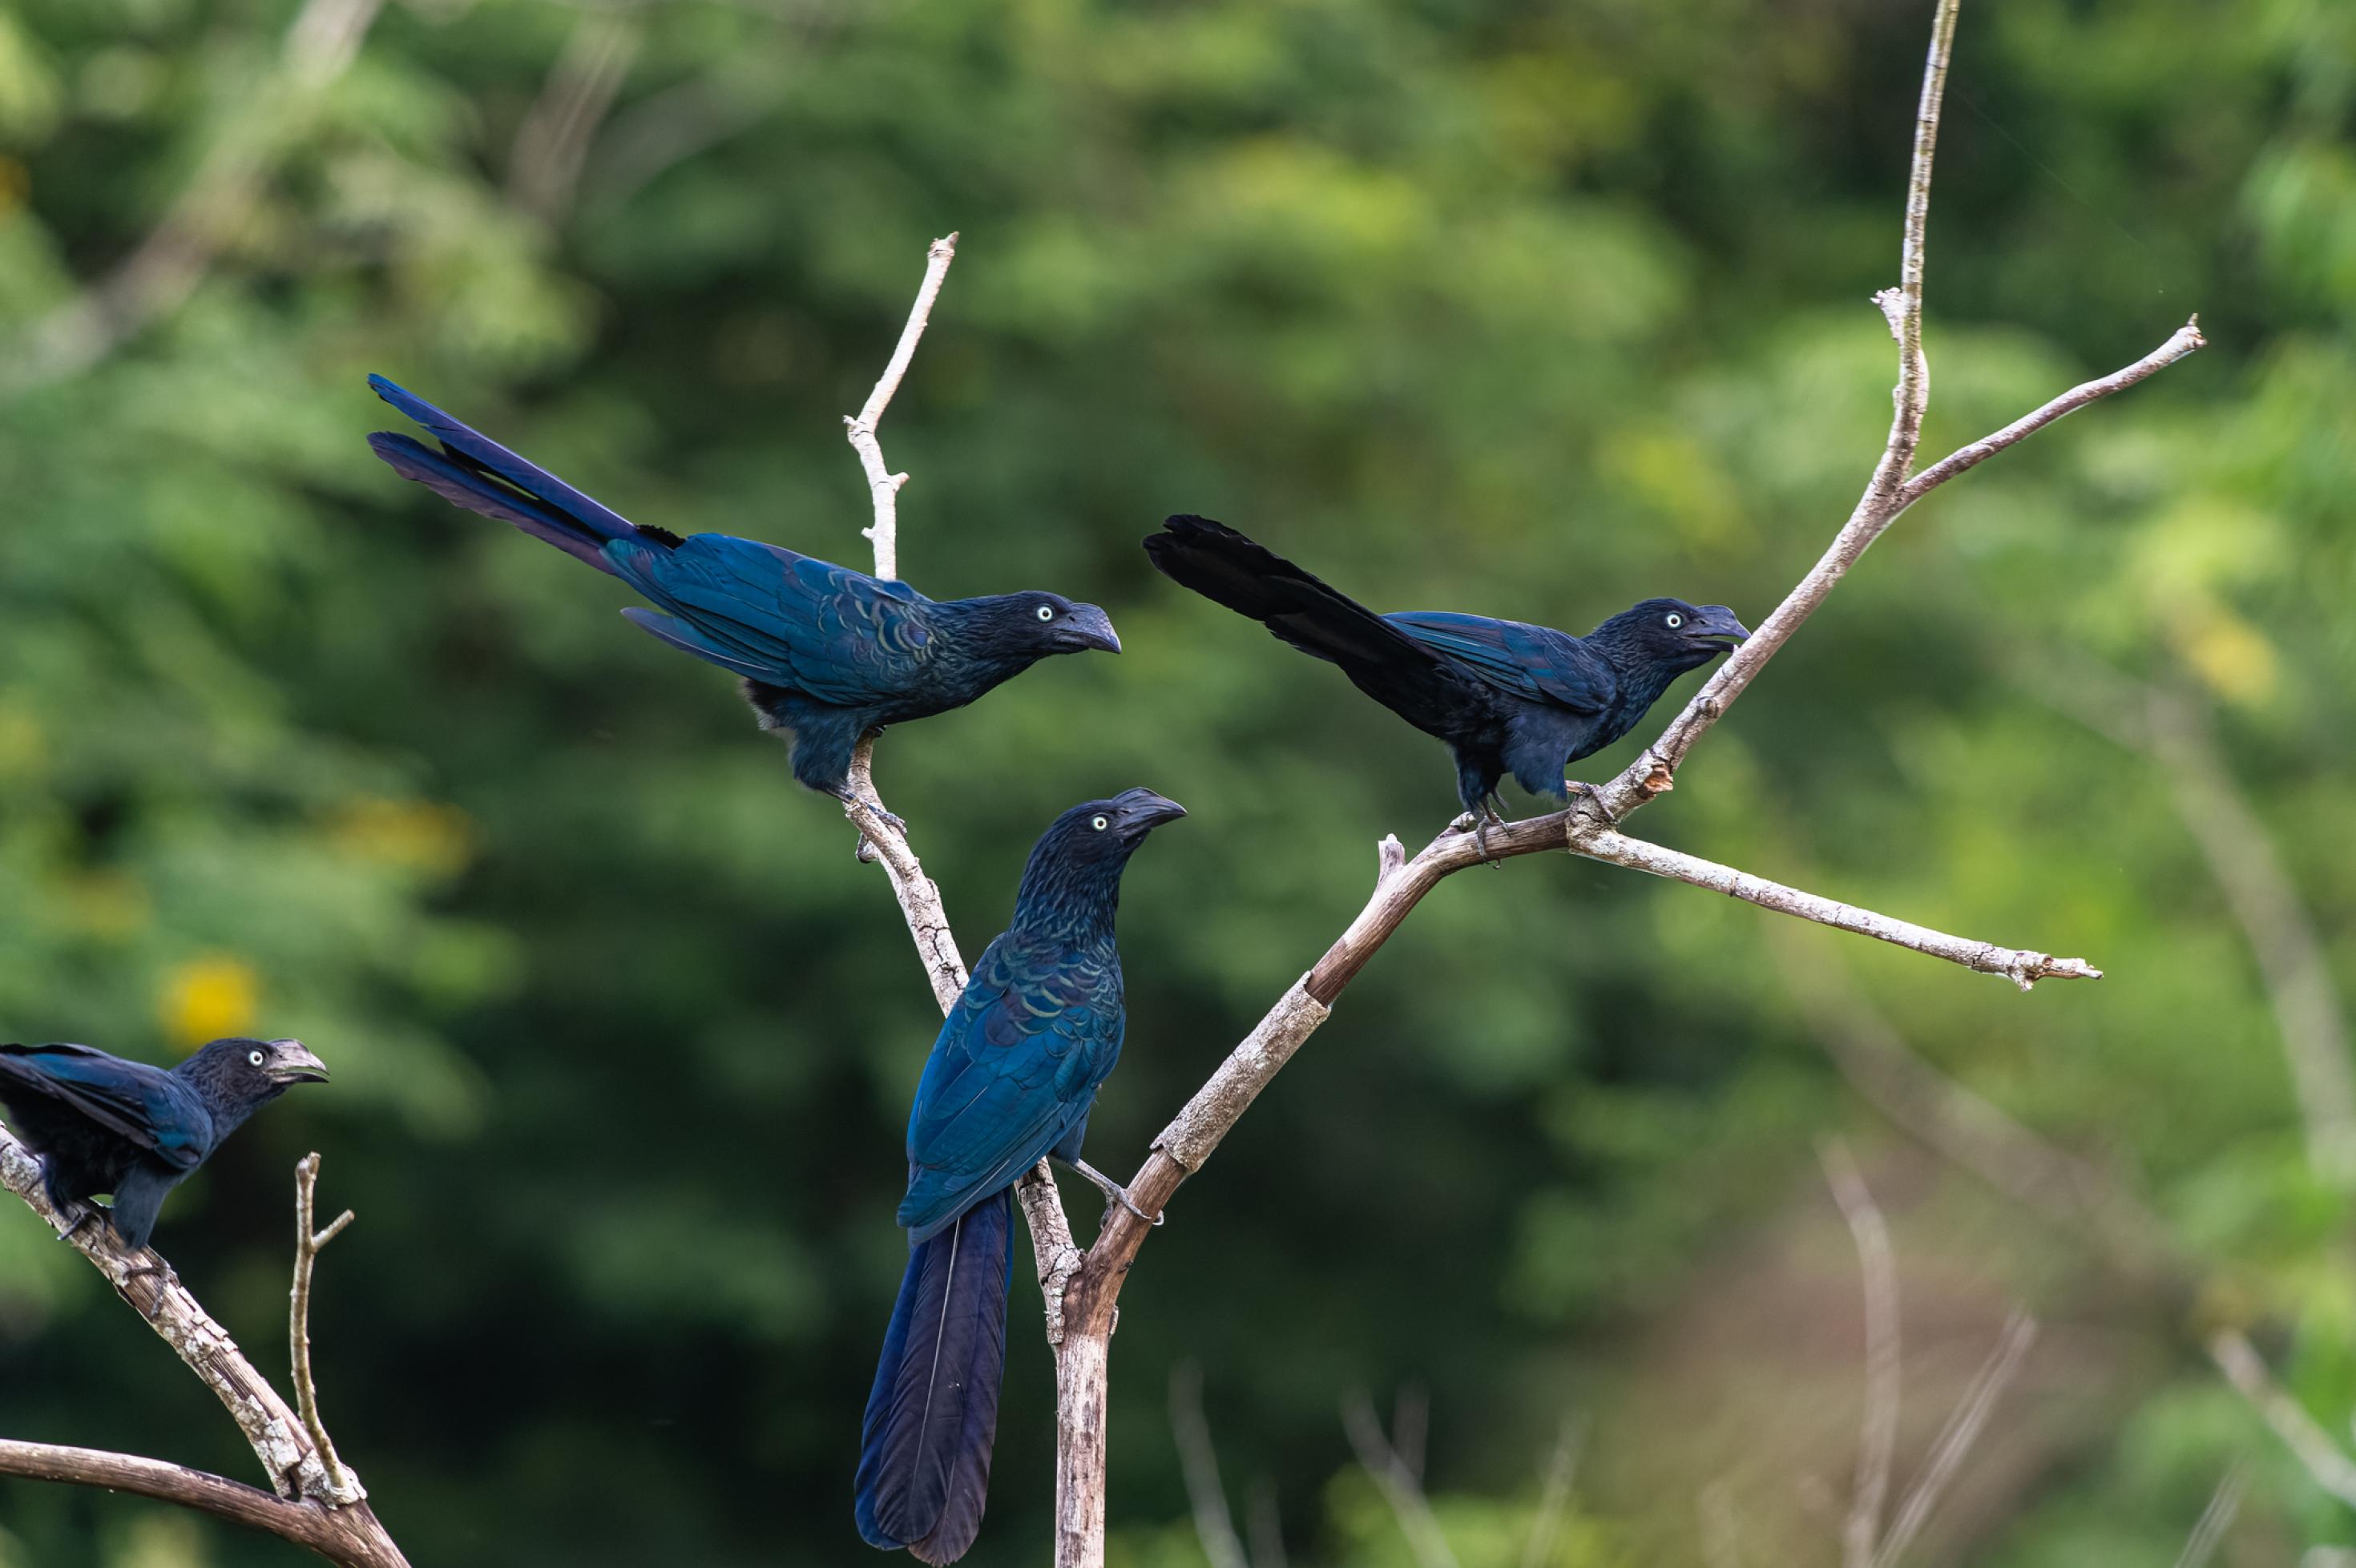 Vier blau-violette Vögel, Riesenanis, sitzen auf Zweigen.